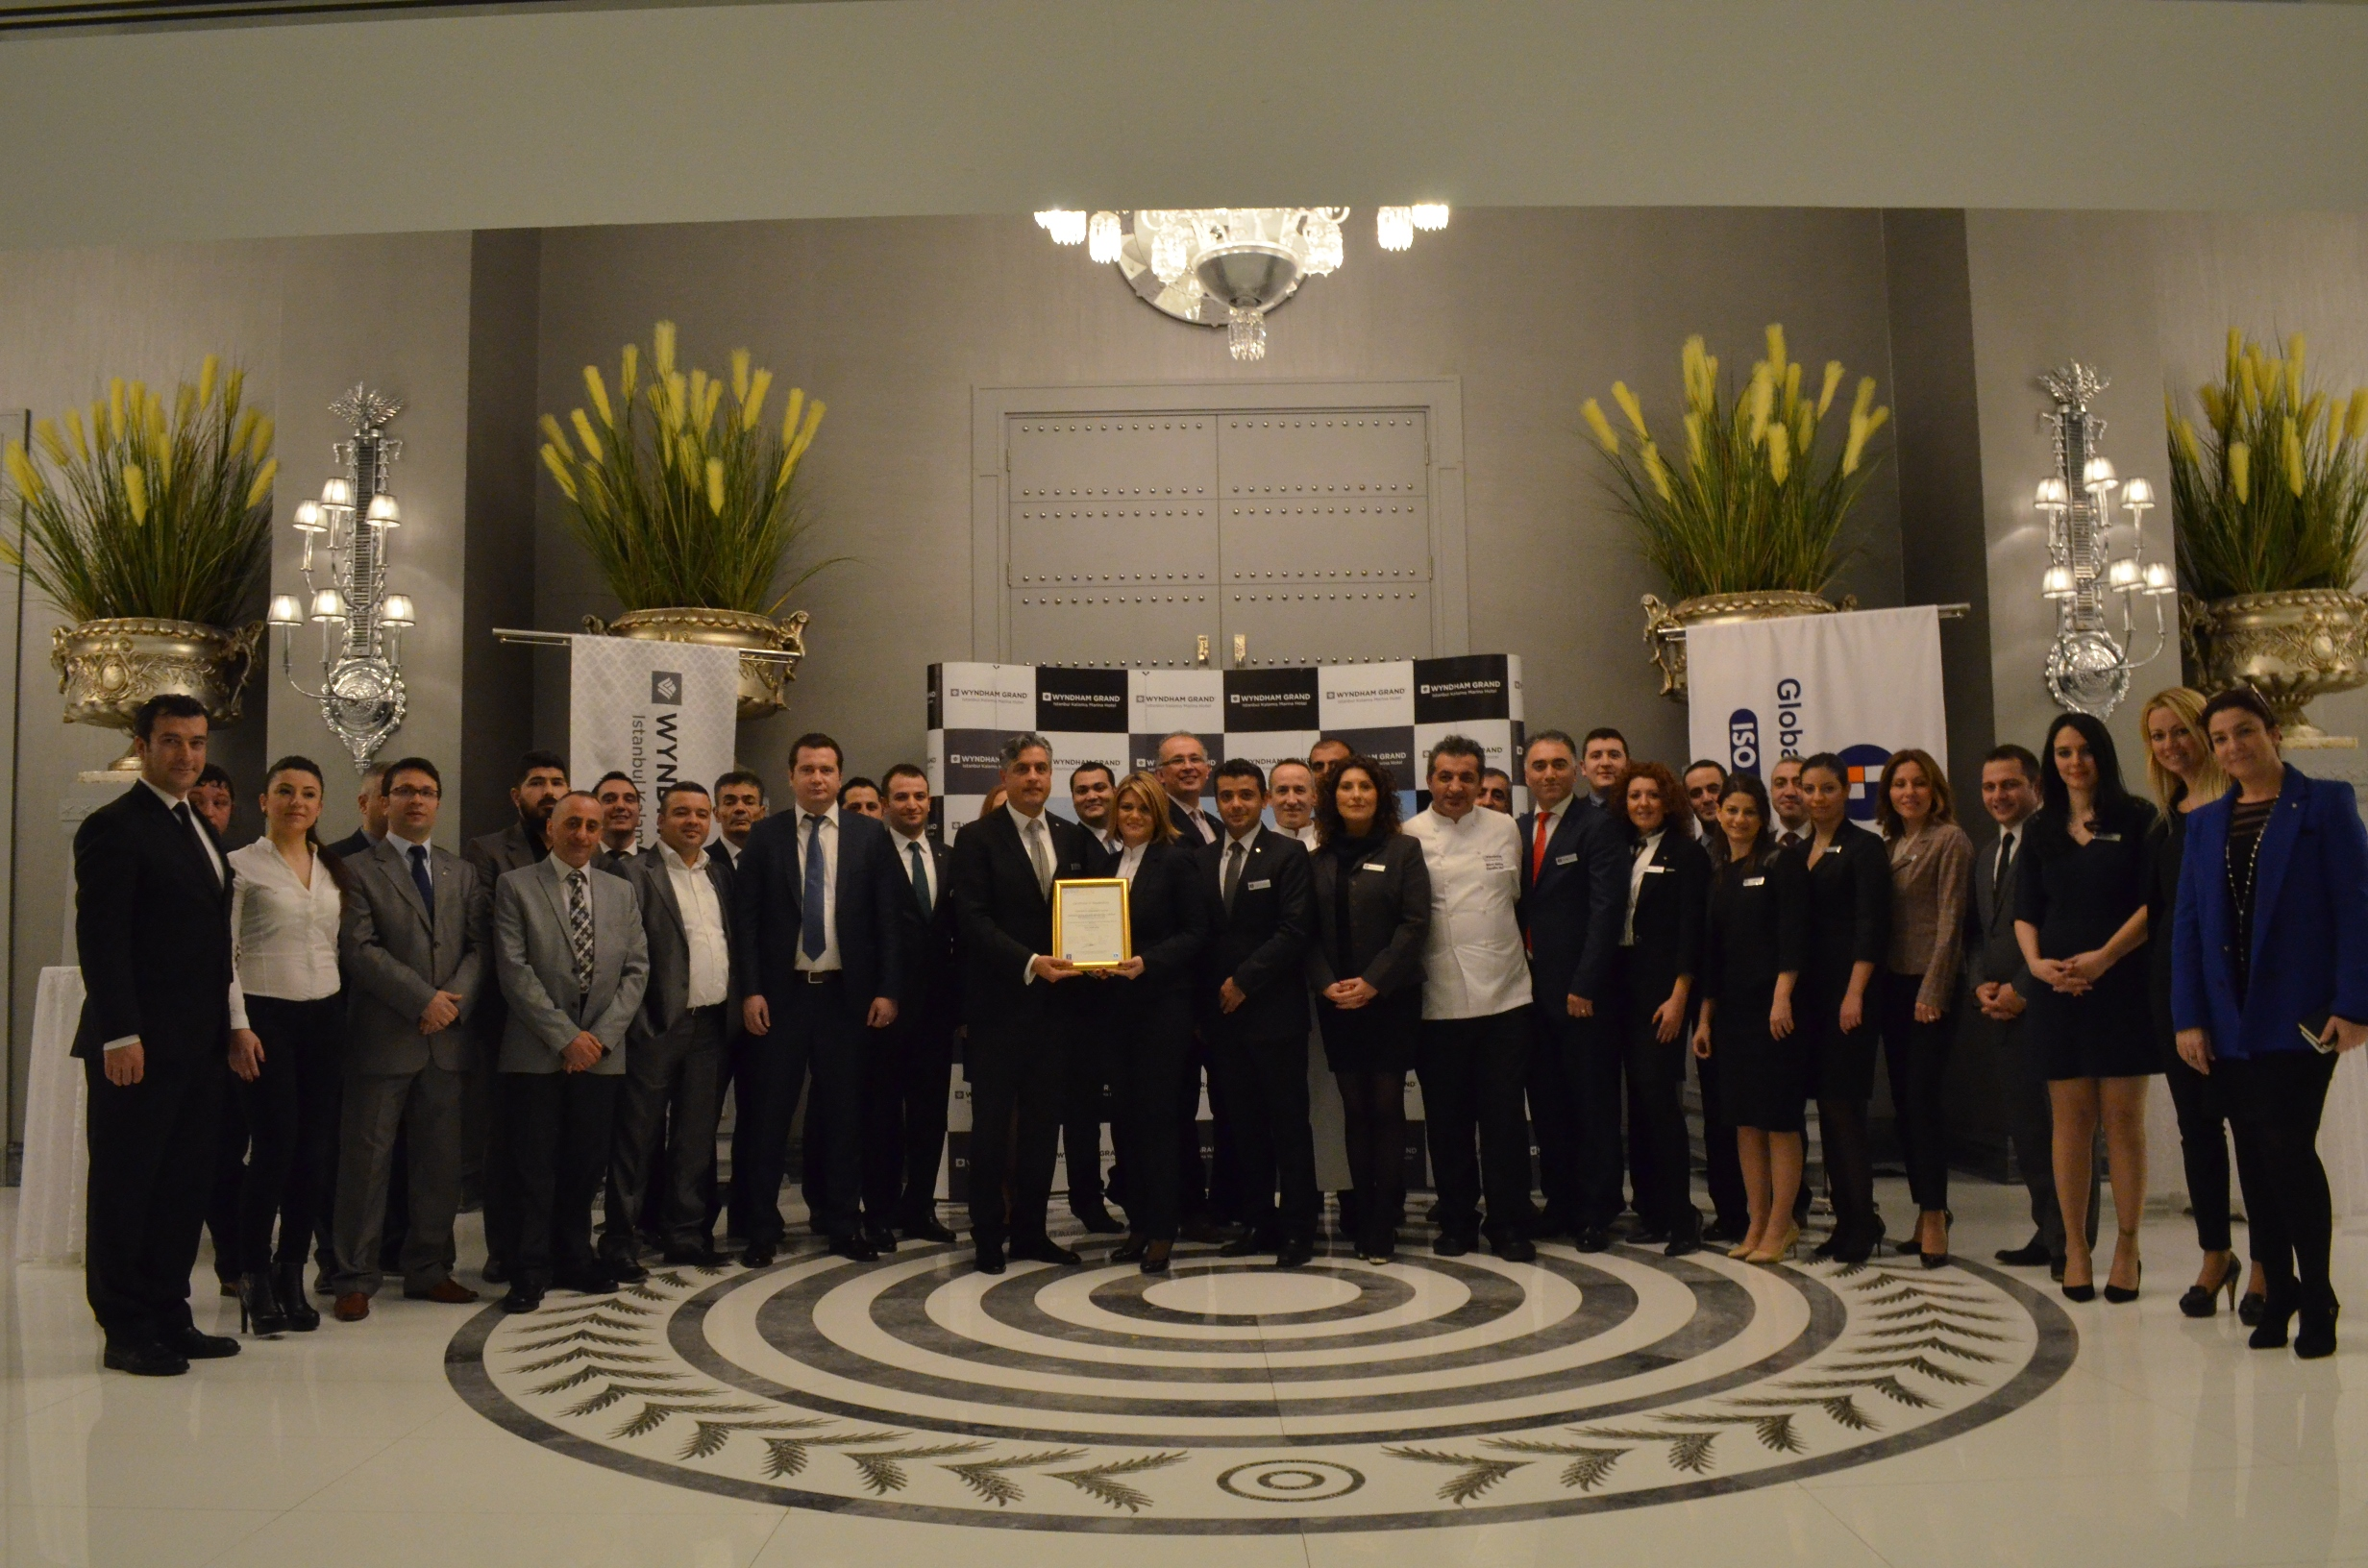 Wyndham Grand İstanbul Kalamış Marina Hotel Gıda güvenliği sertifikasını alan ilk oteli oldu